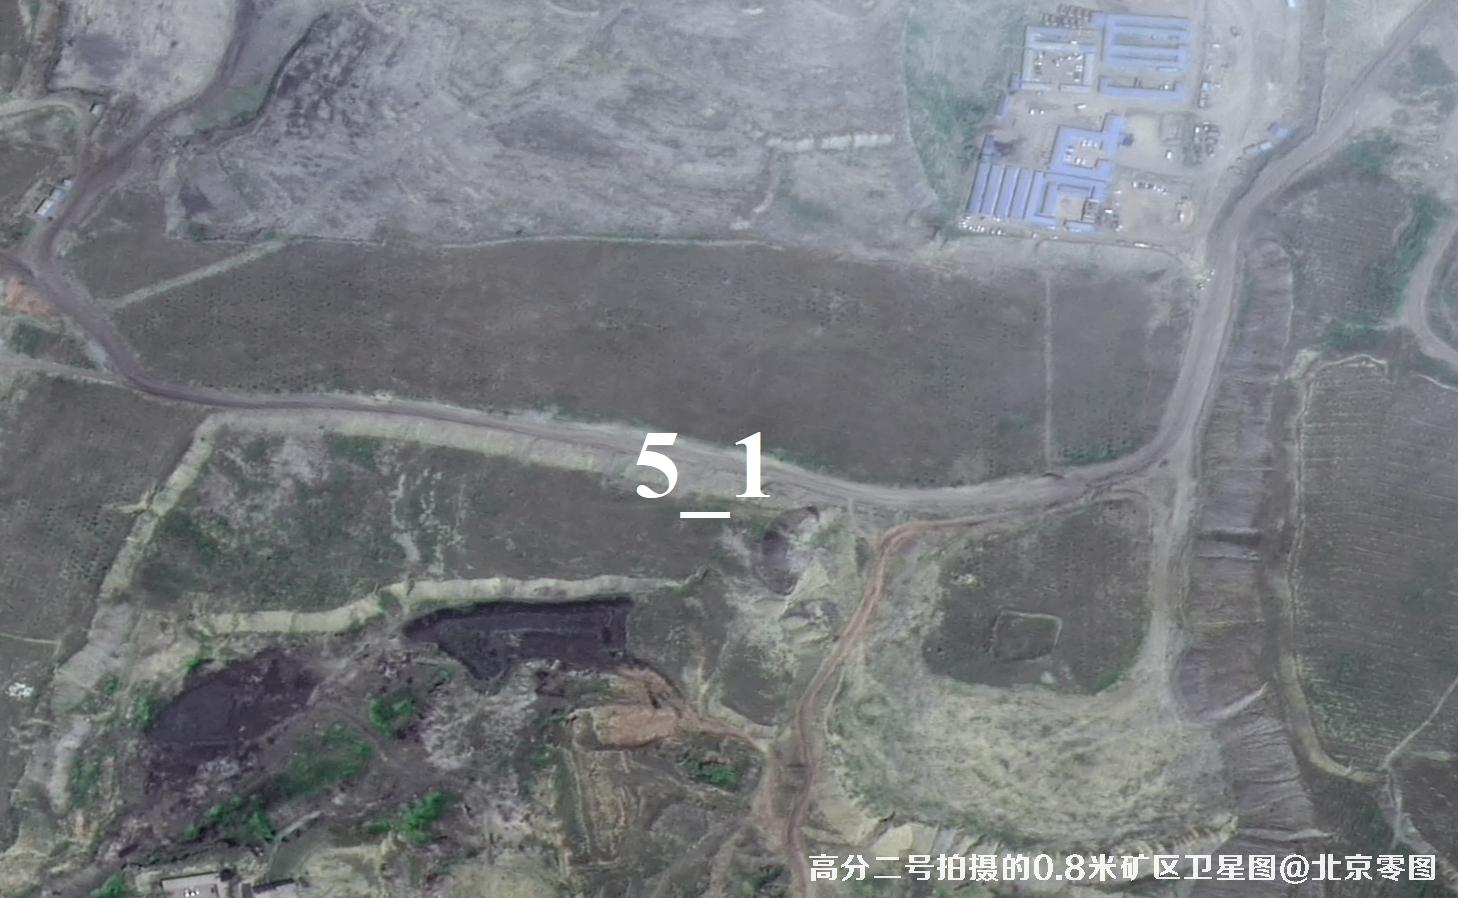 国产0.8米卫星高分二号拍摄的内蒙古矿区卫星图